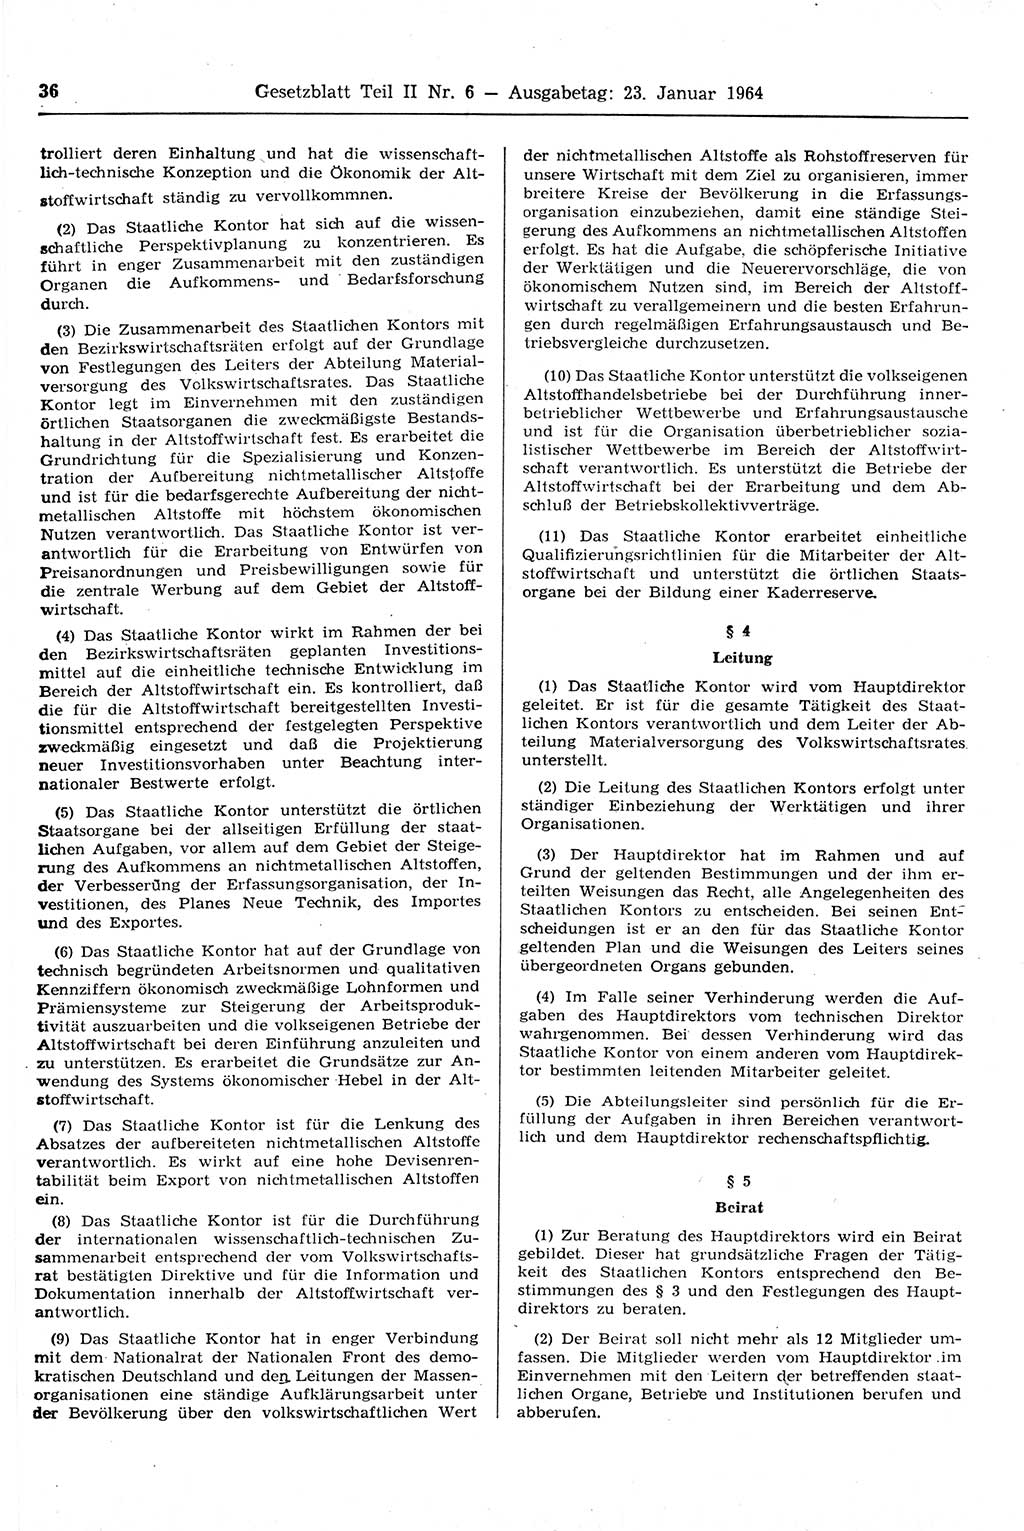 Gesetzblatt (GBl.) der Deutschen Demokratischen Republik (DDR) Teil ⅠⅠ 1964, Seite 36 (GBl. DDR ⅠⅠ 1964, S. 36)